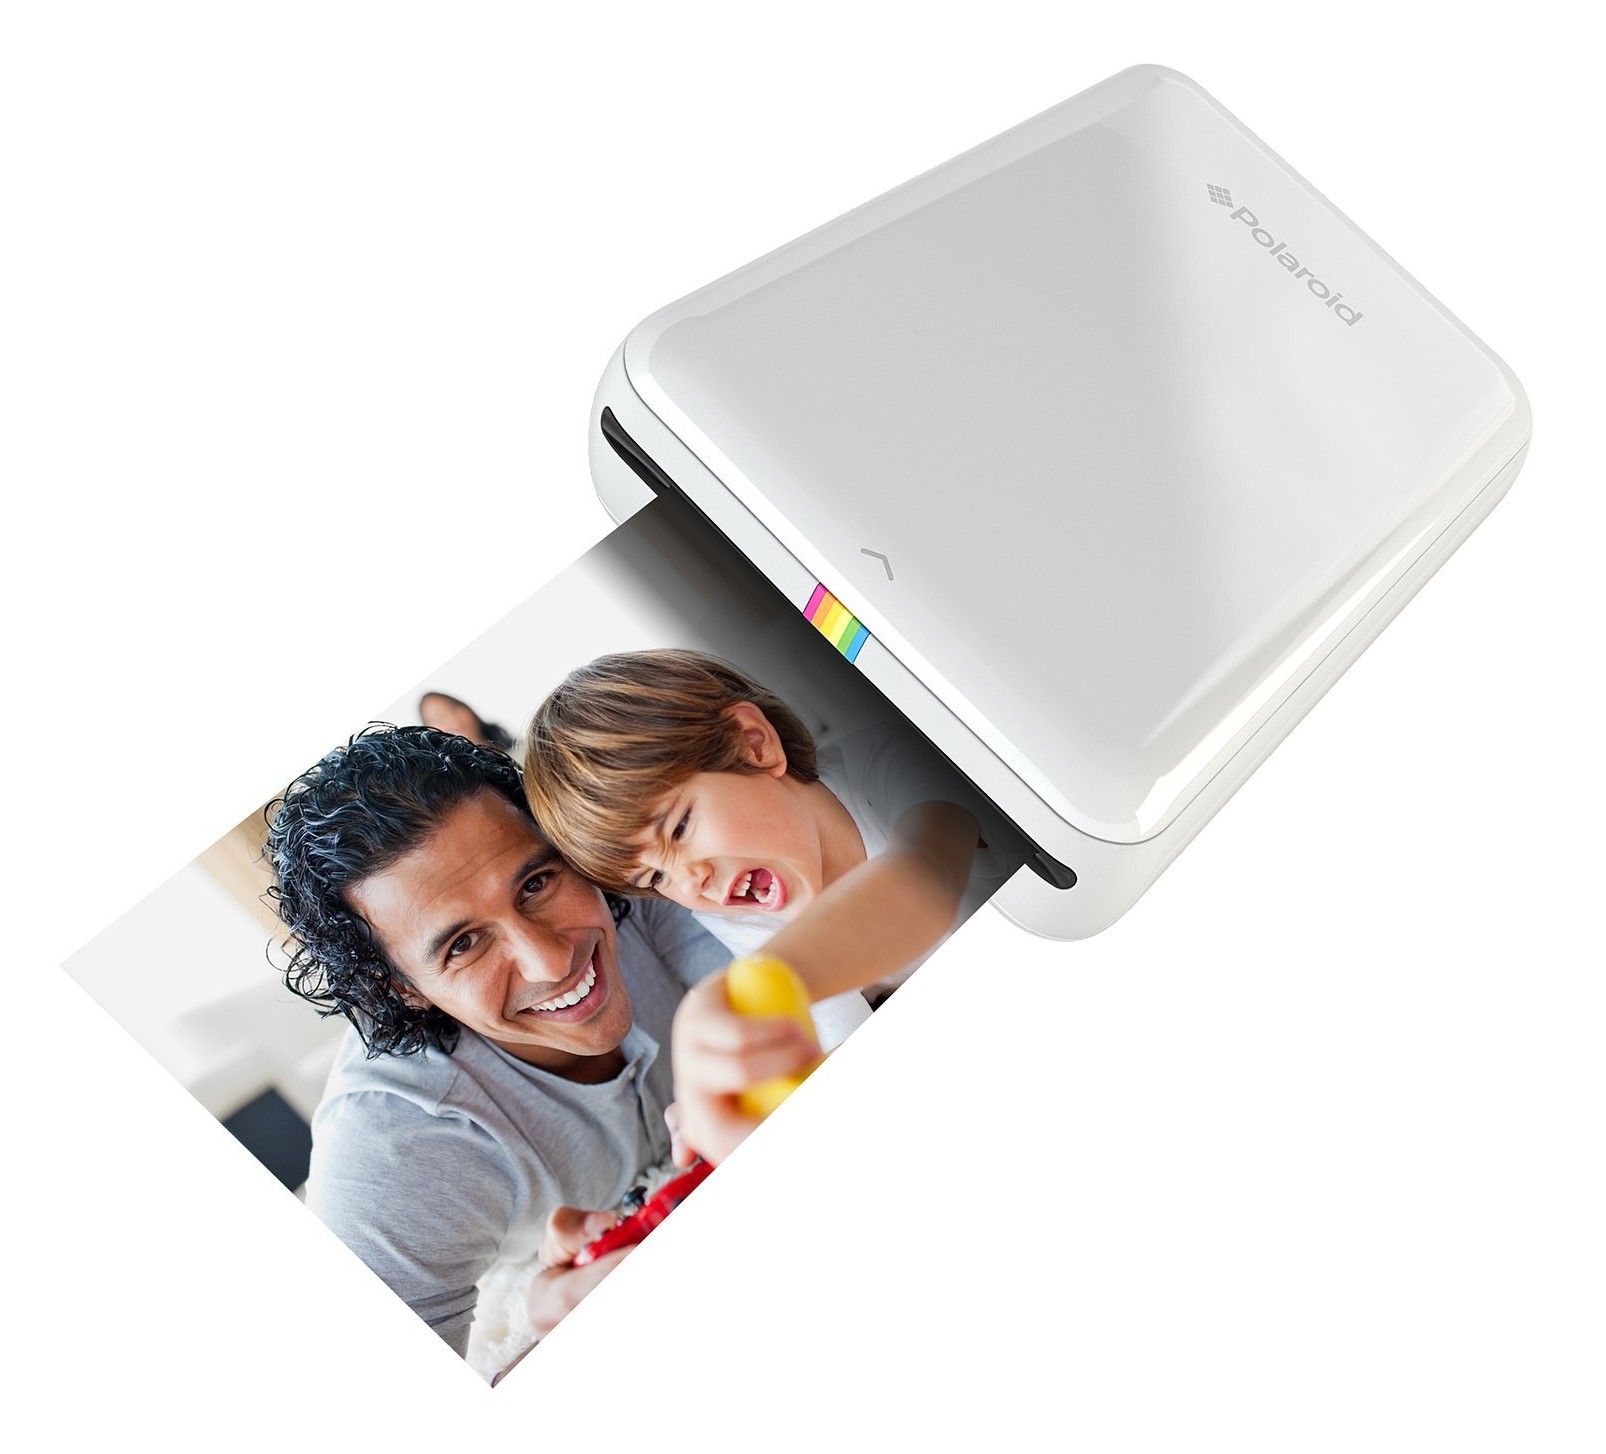 Polaroid - Polaroid ZIP Stampante Portatile w/ZINK Tecnologia Zero Ink  Printing - Compatibile iOS e Dispositivi Android - Bianco - Avvenice